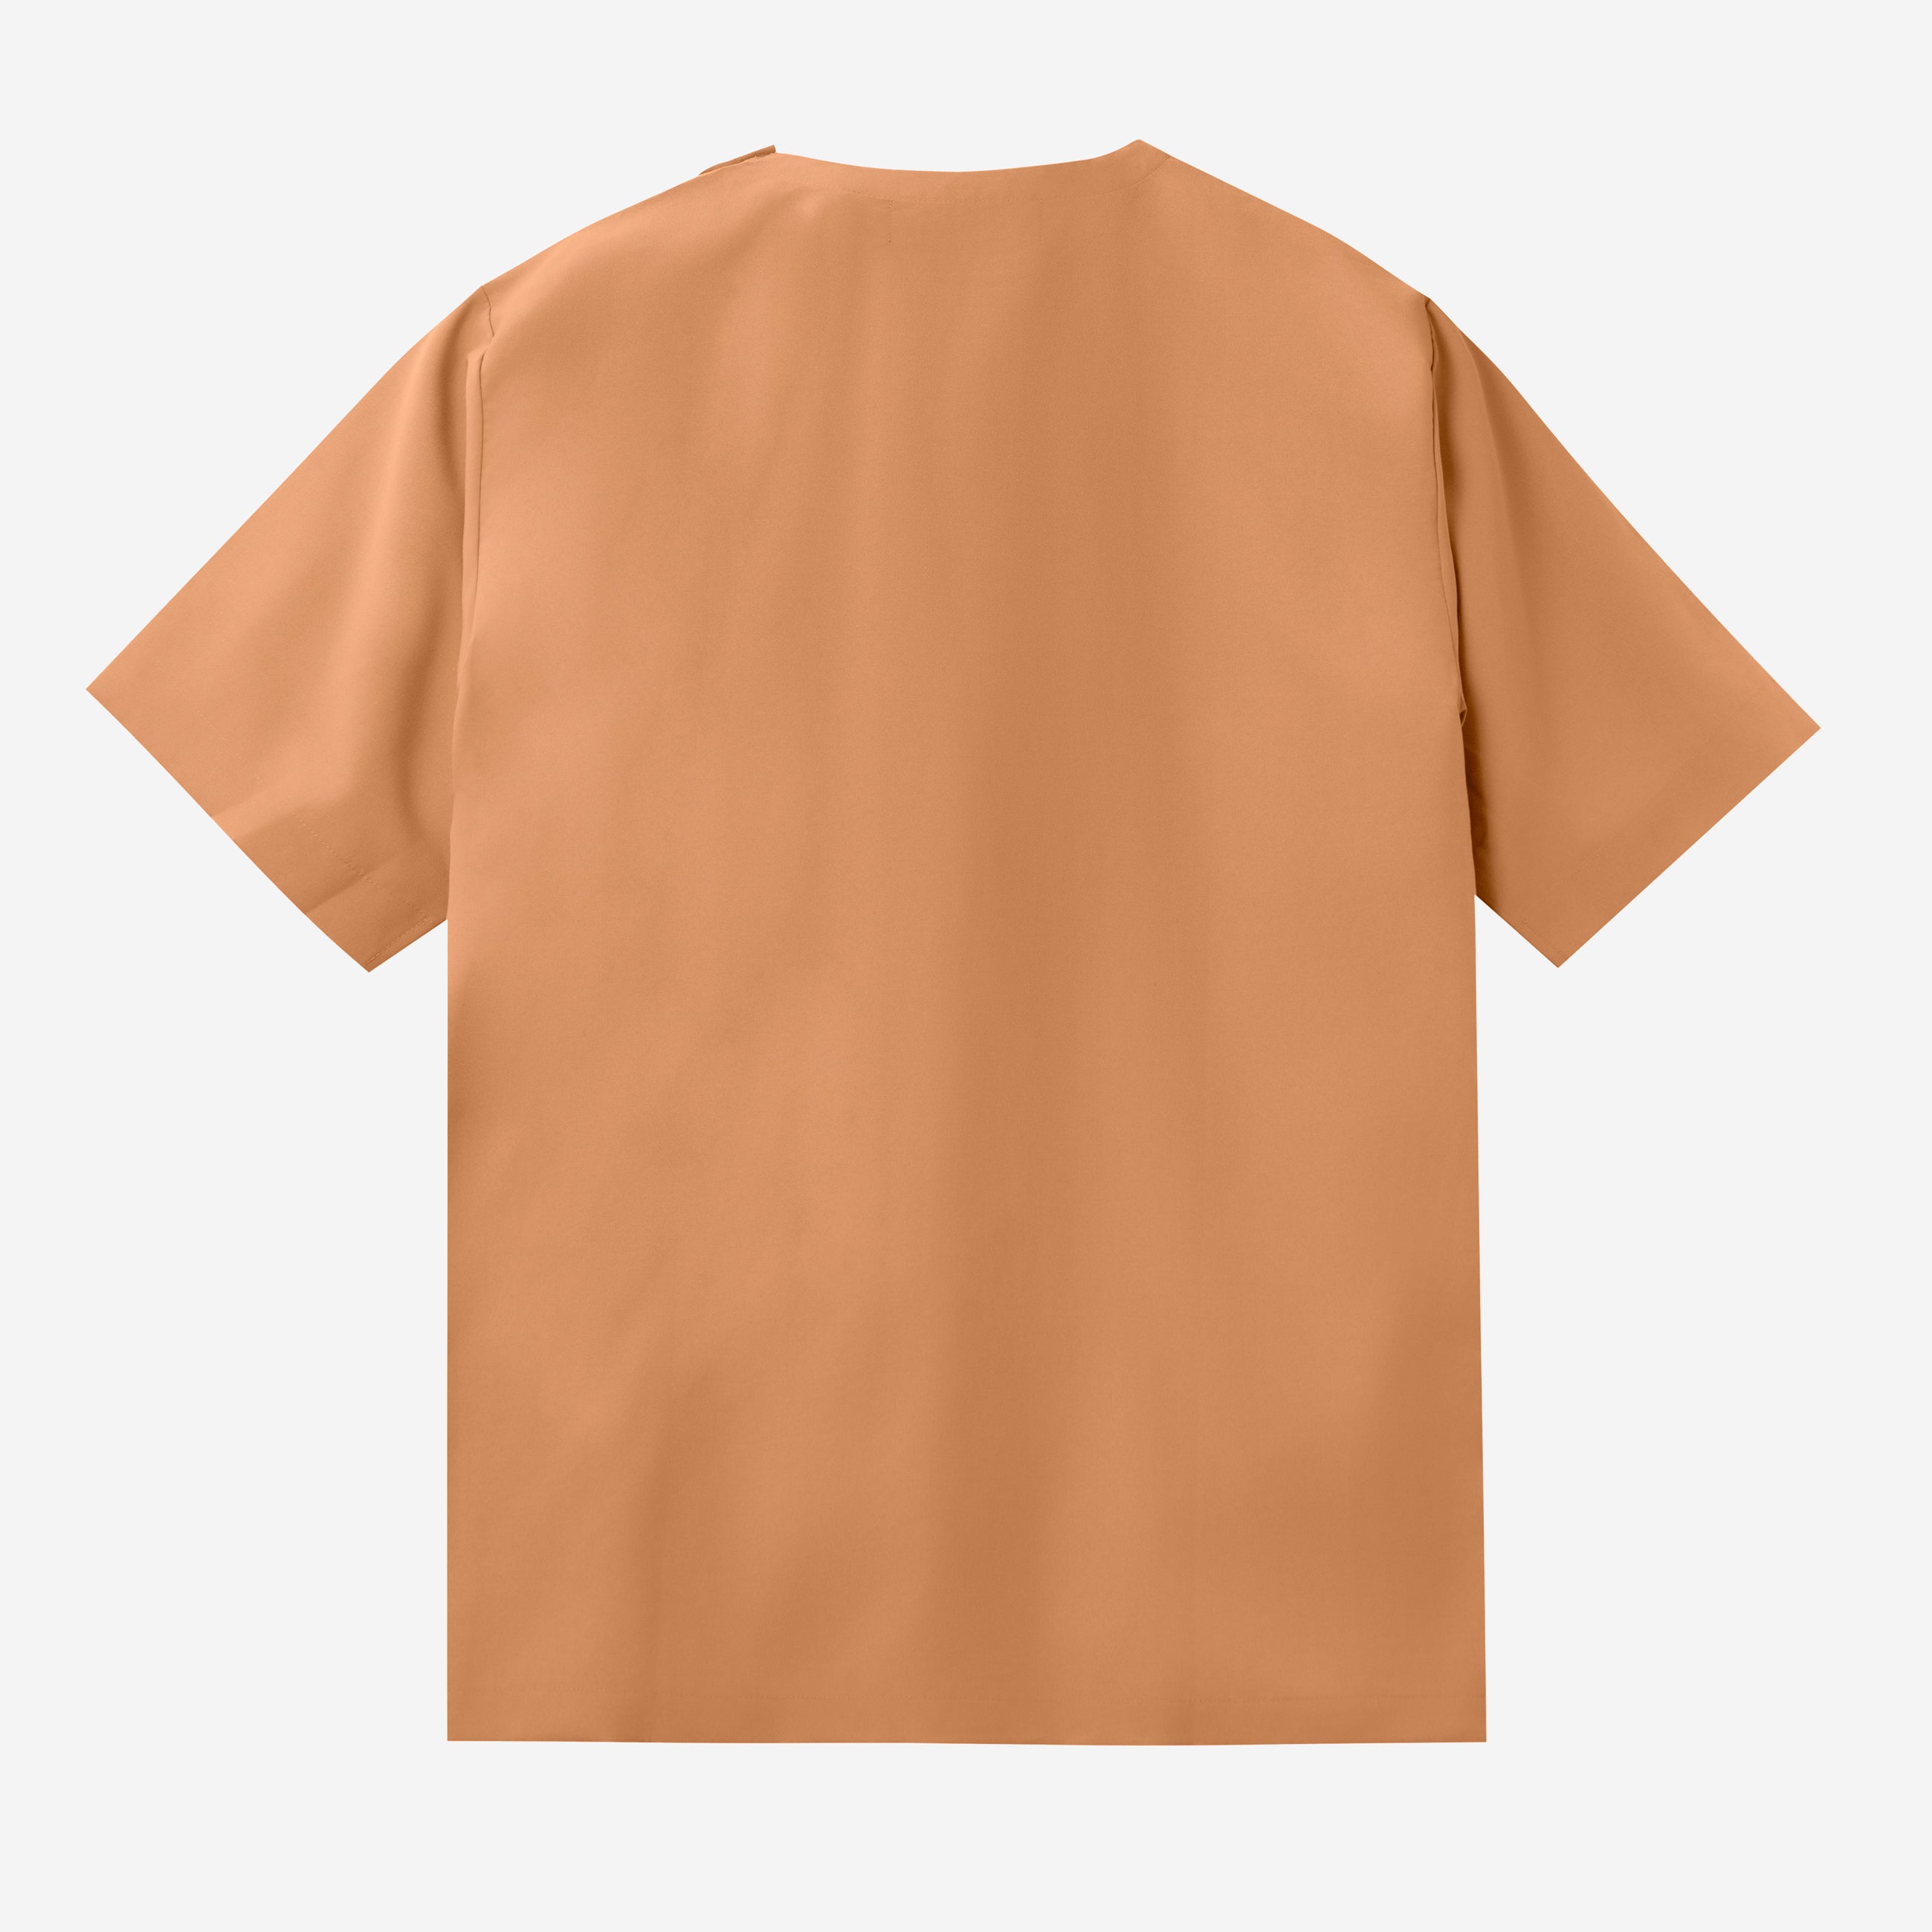 Rahab T-shirt - Yellow Brown